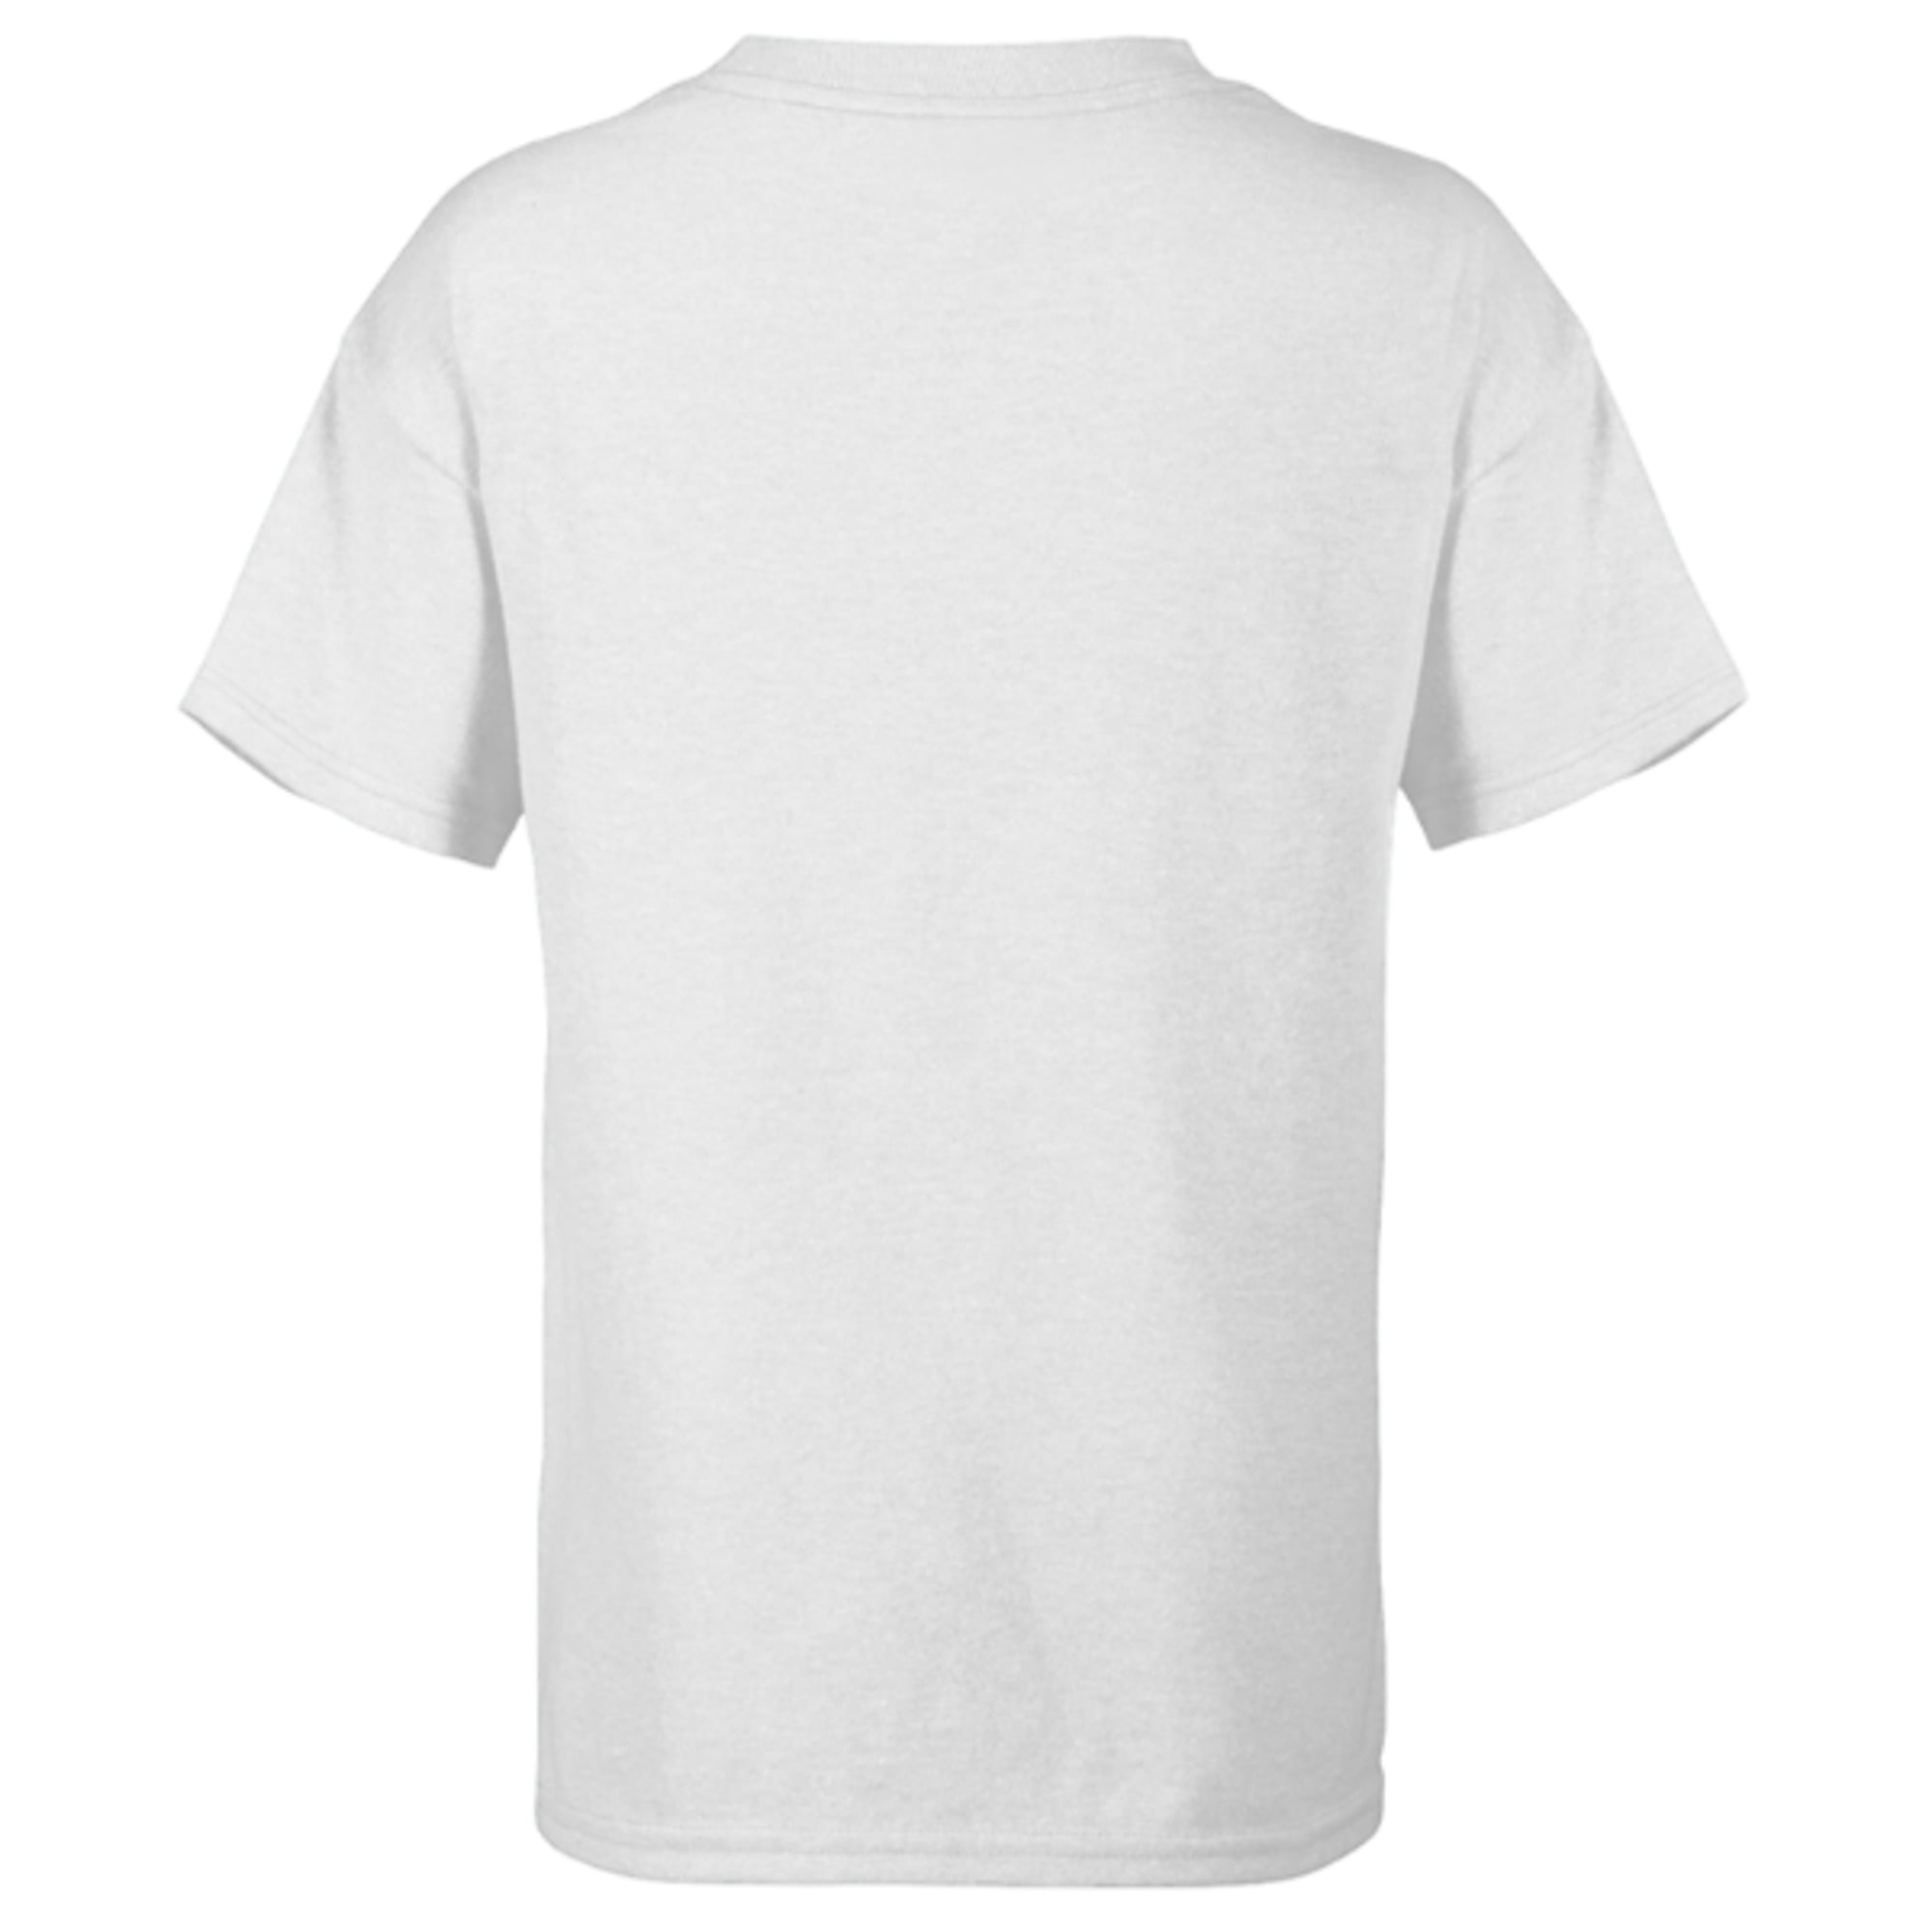 Sleeve Wars - Ren Kylo Customized-White T-Shirt Star for Japanese Kids - Short